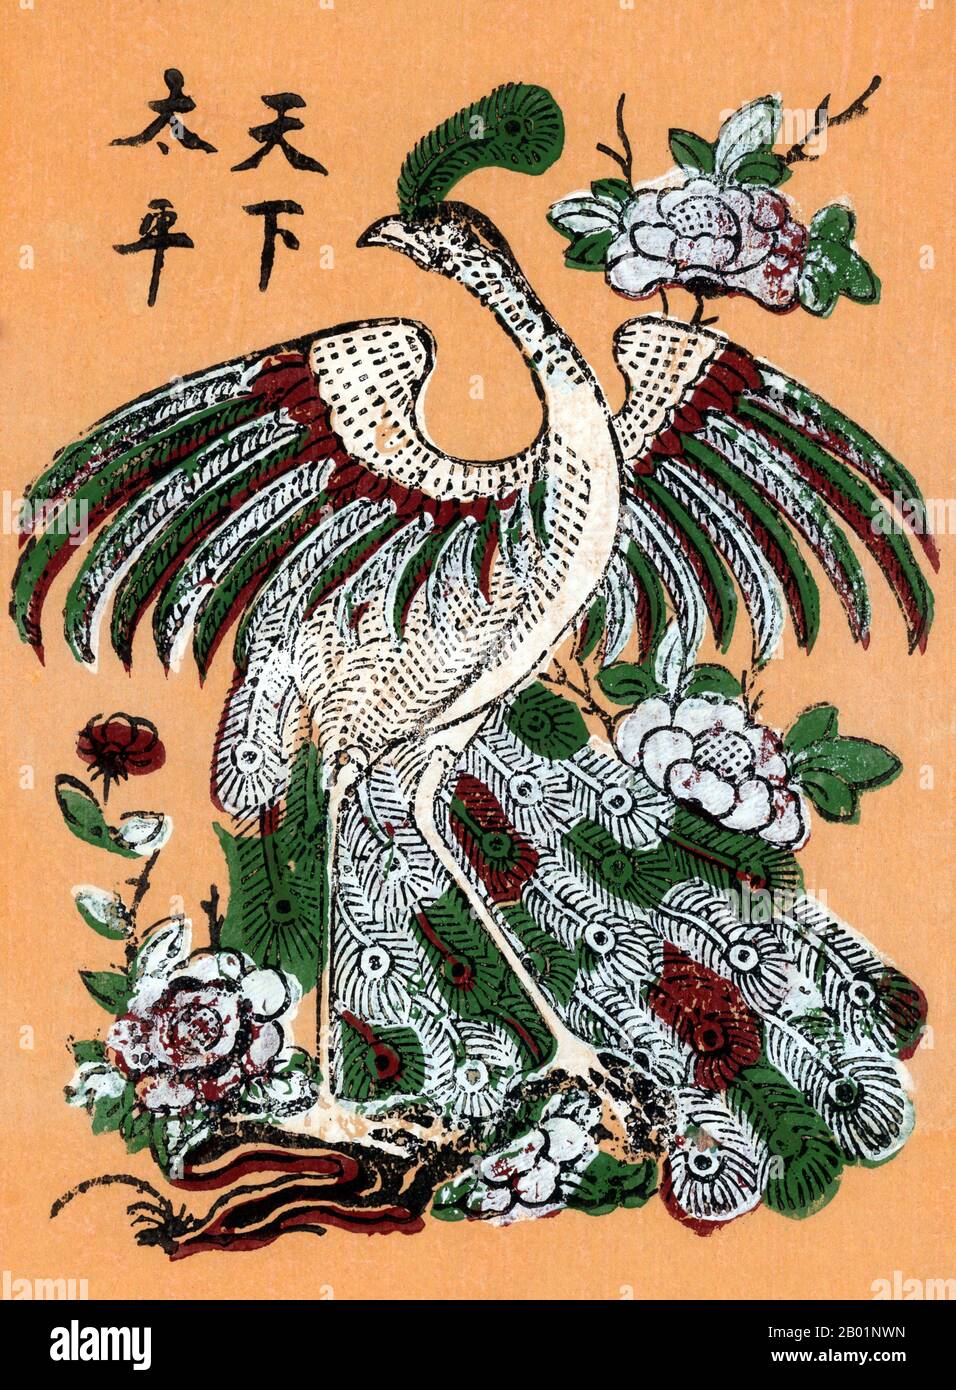 Vietnam : un phénix mythologique. Peinture traditionnelle sur bois du village de Dong Ho, province de bac Ninh, 20e siècle. Le phénix est un oiseau de feu sacré mythique que l'on retrouve dans les mythologies des Perses, des Grecs, des Romains, des Égyptiens, des Chinois et (selon Sanchuniathon) des Phéniciens. Un phénix est un oiseau mythique qui est un esprit de feu avec un plumage coloré et une queue d'or et écarlate (ou violet, bleu, et vert selon certaines légendes). Il a un cycle de vie de 500 à 1000 ans, vers la fin duquel il construit lui-même un nid de brindilles qui s'enflamme ensuite. Banque D'Images